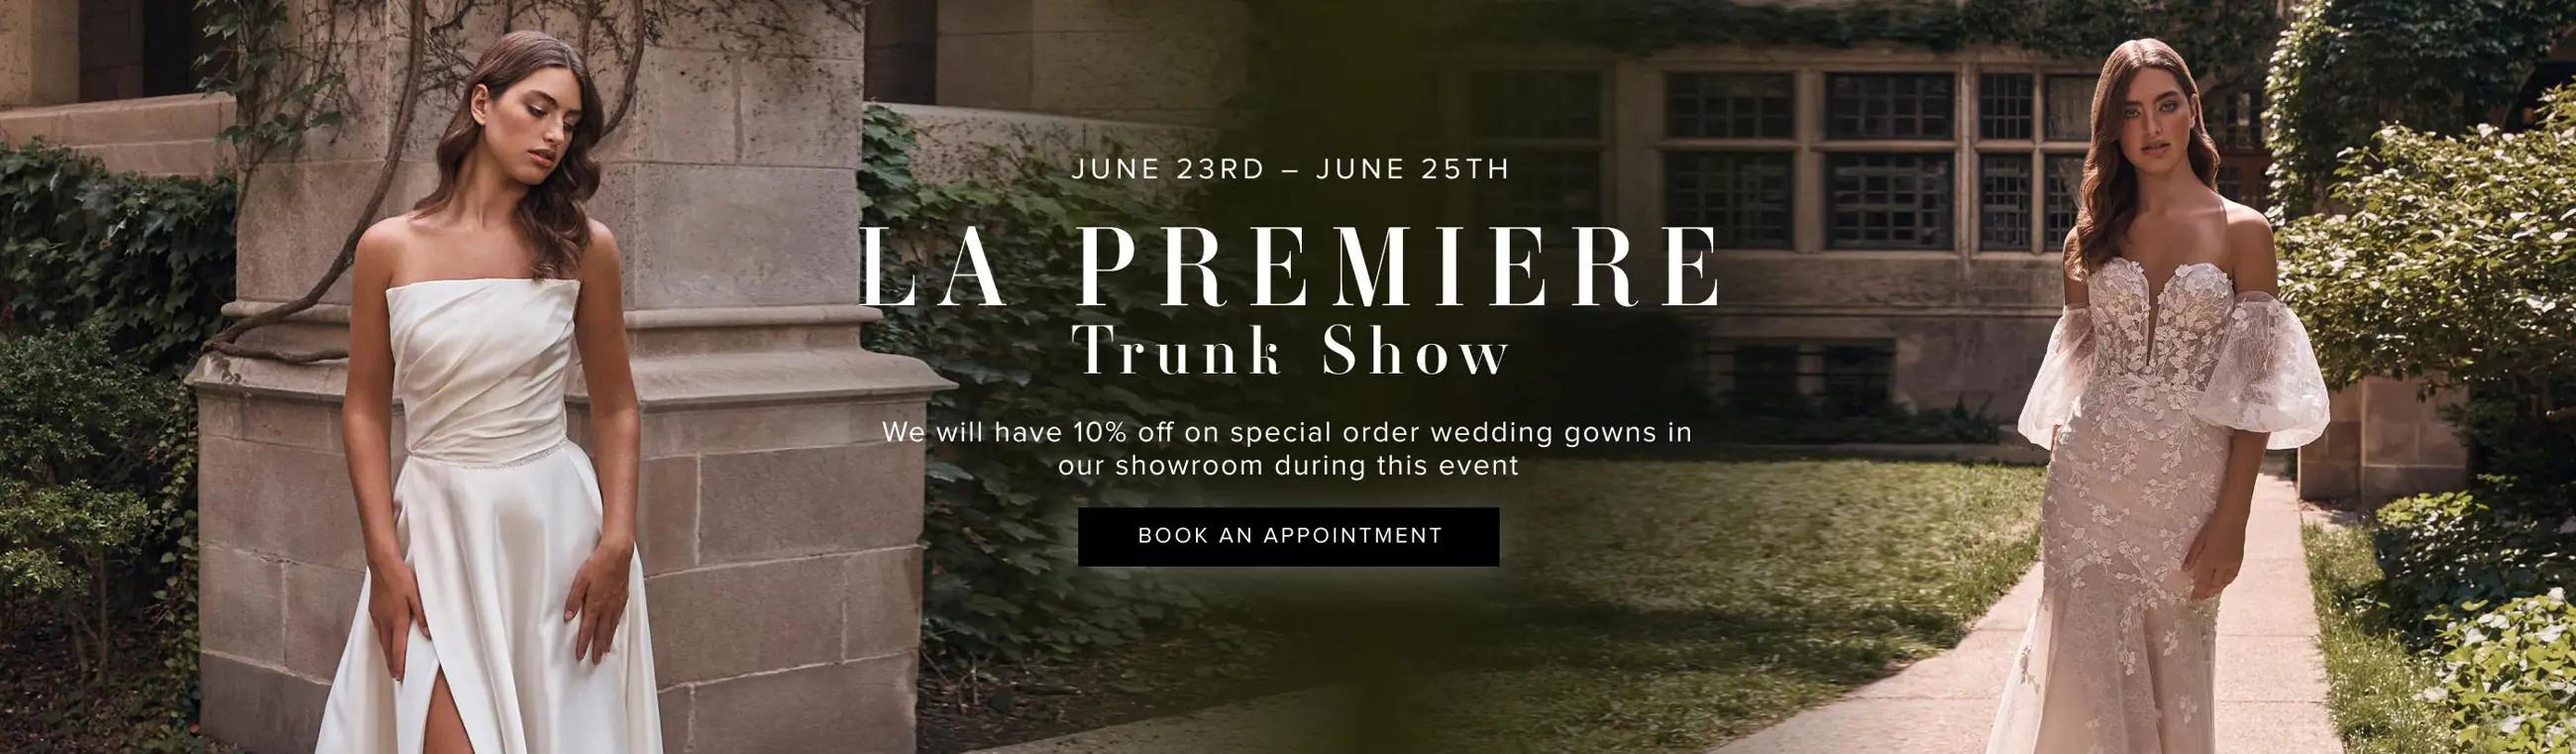 La Premiere Trunk Show Banner Desktop